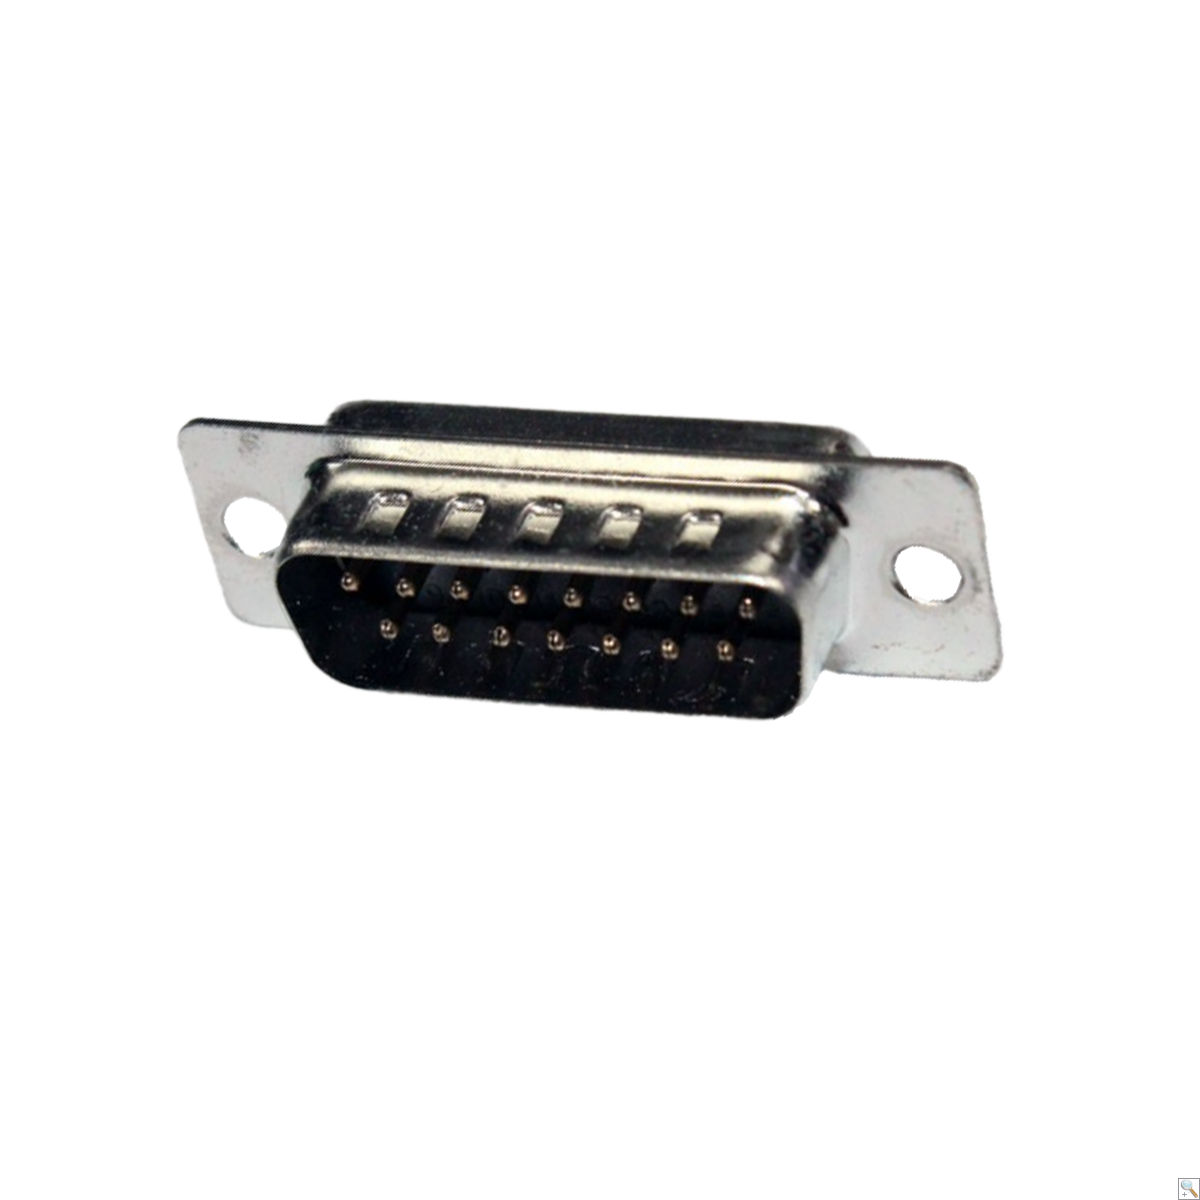 D sub connector 15 way plug